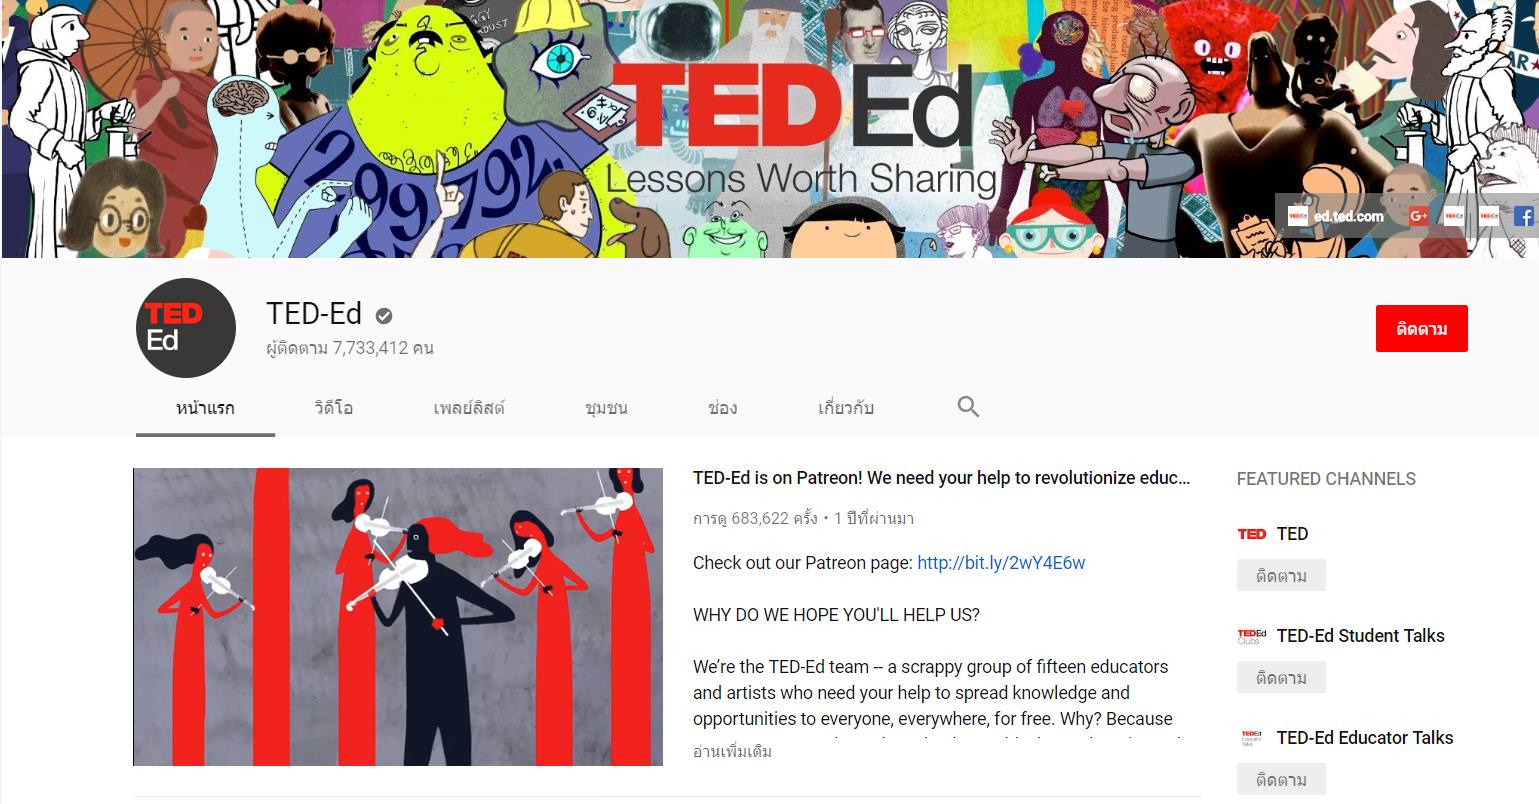 alt="TED-Ed"